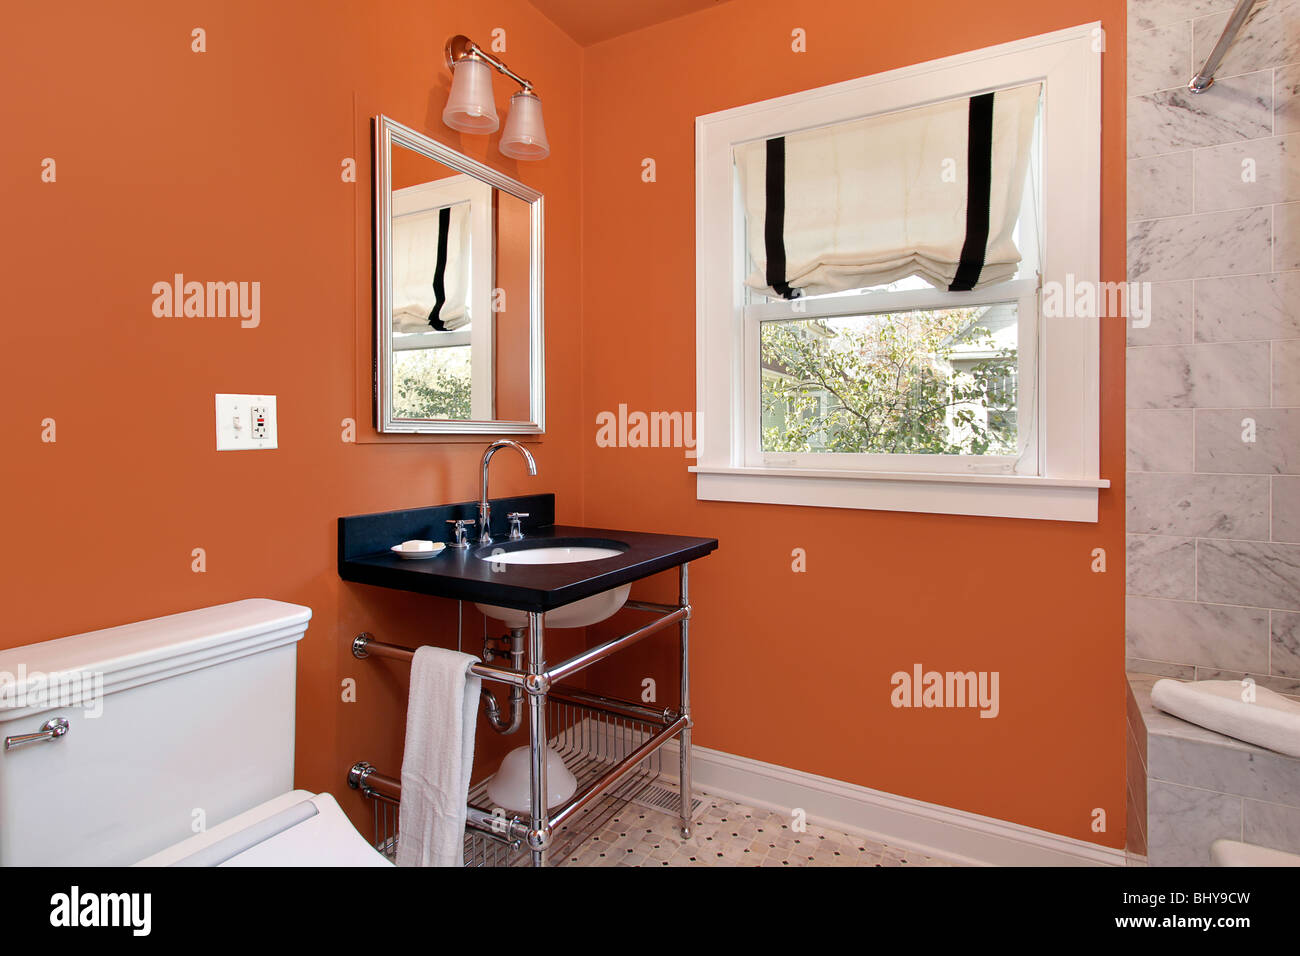 La stanza della polvere nella zona suburbana di casa con pareti di colore arancione Foto Stock